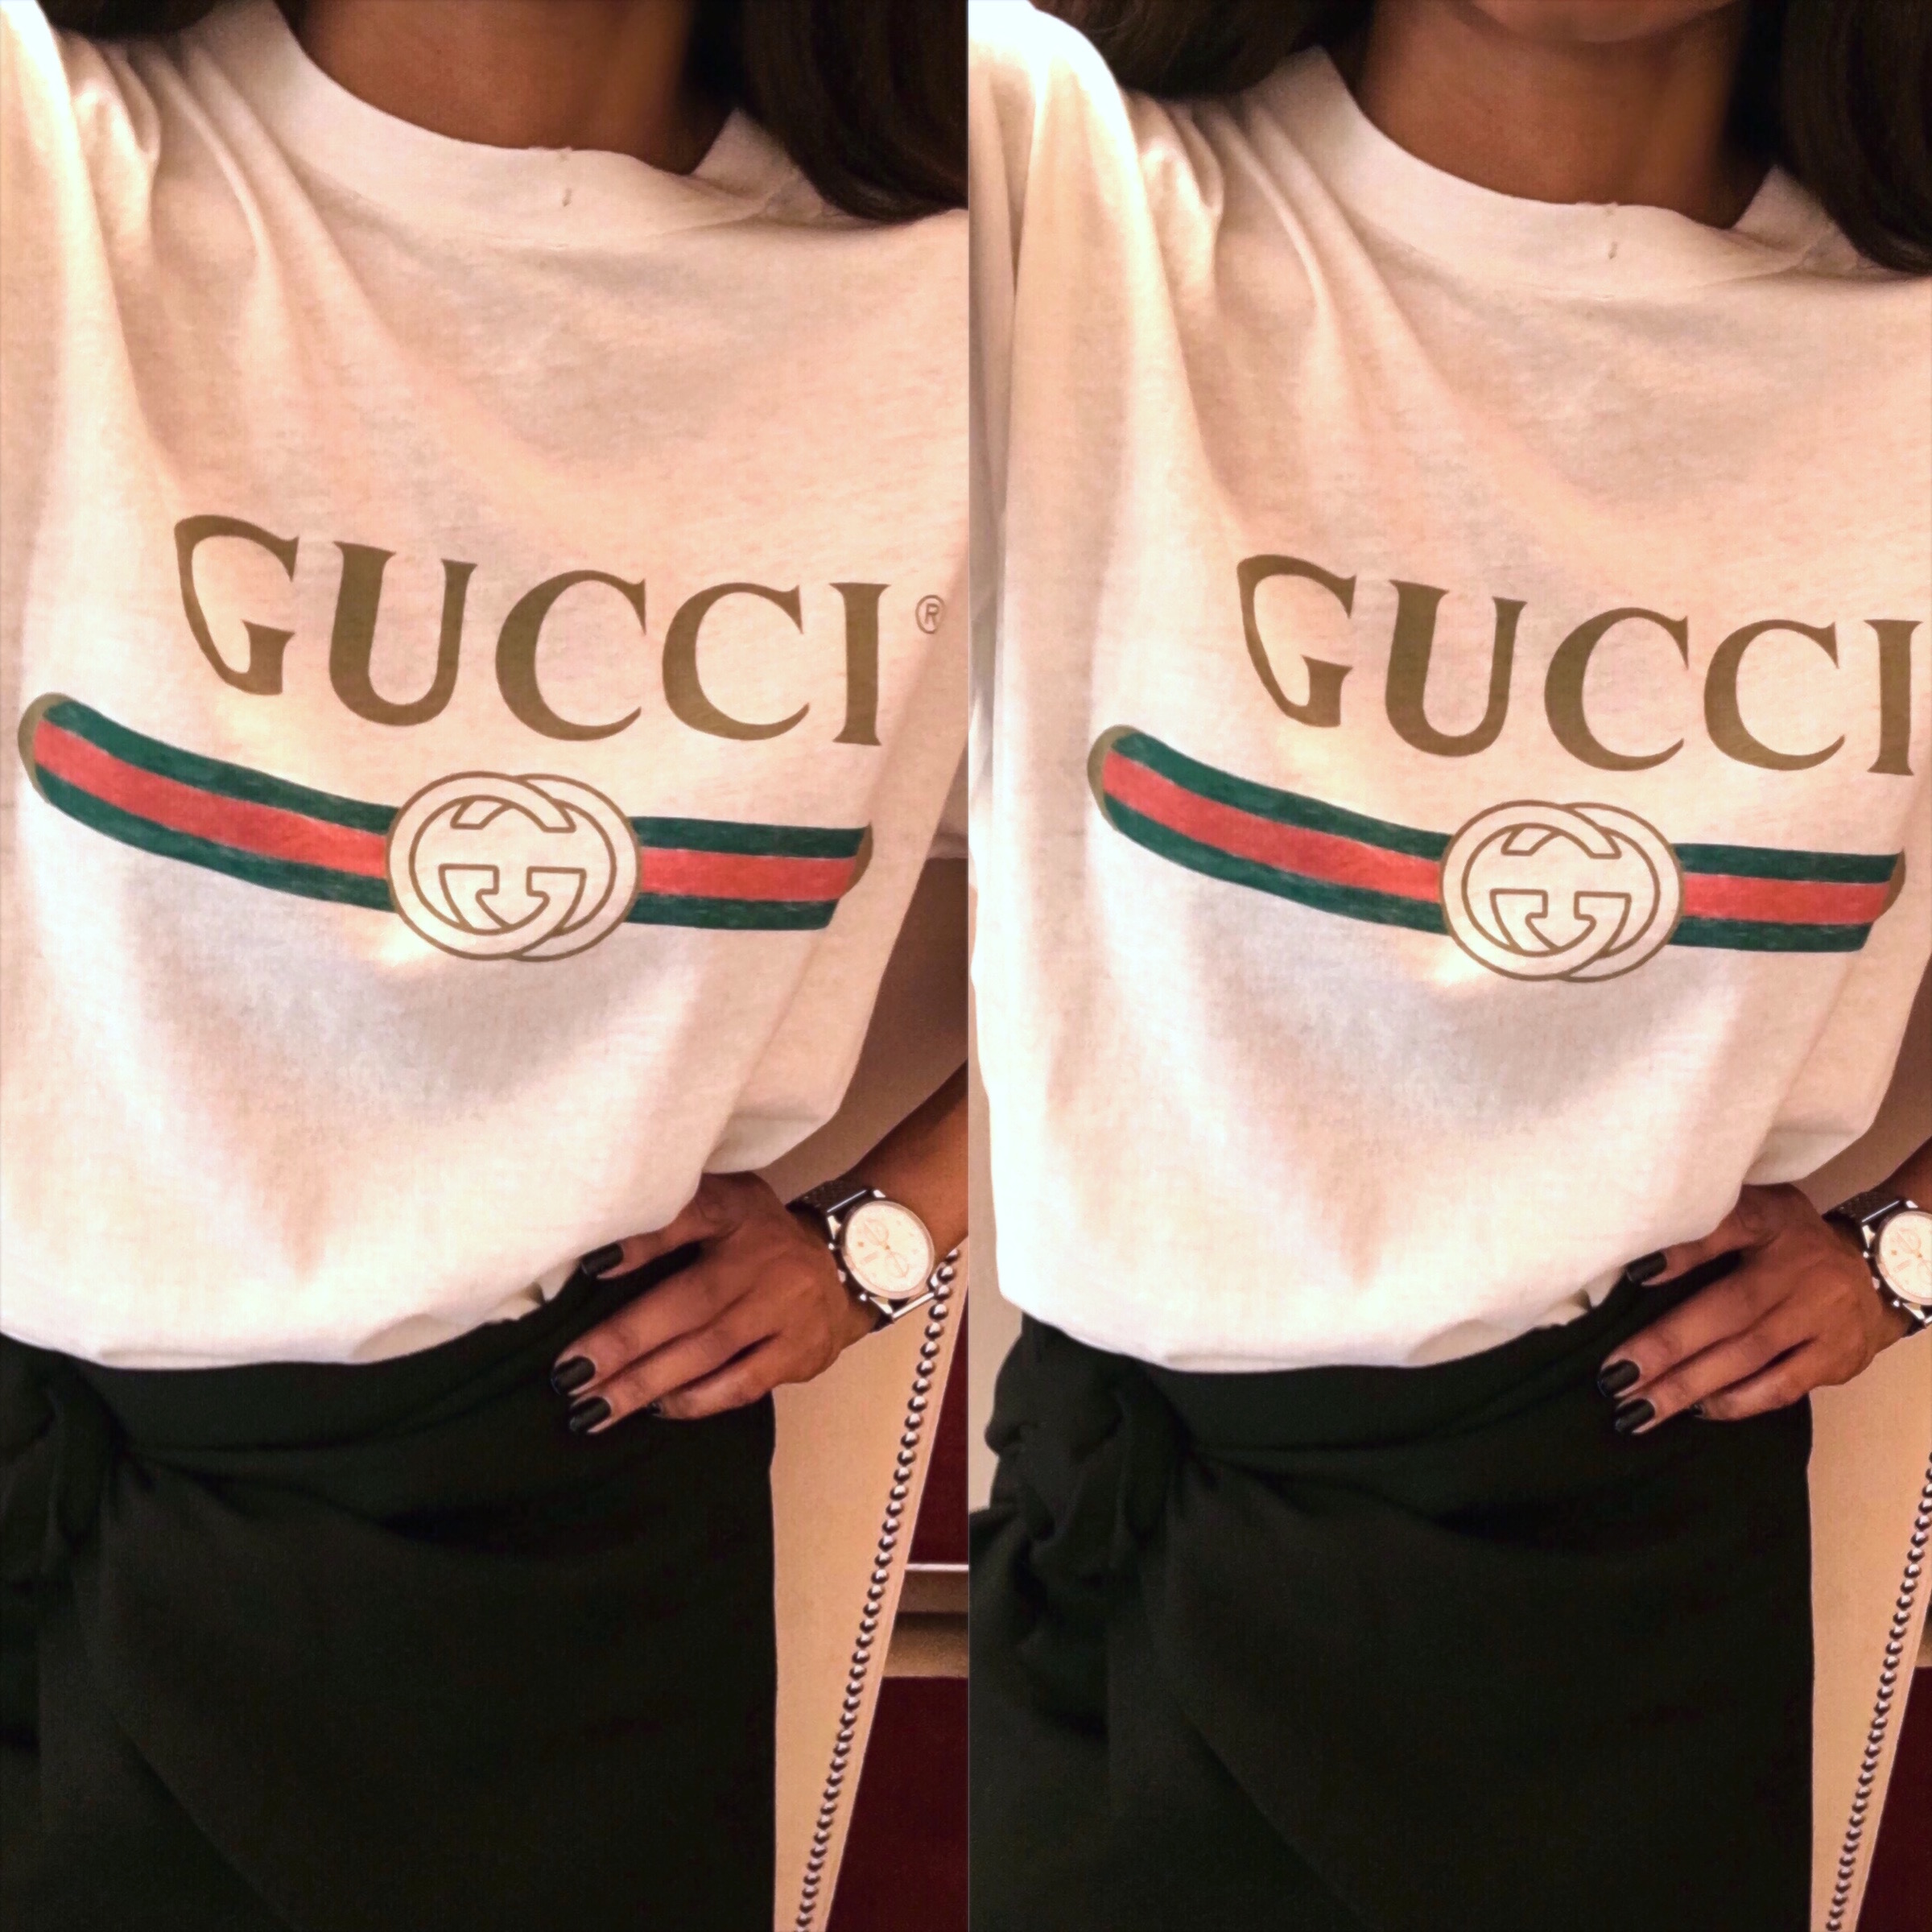 gucci shirts women's